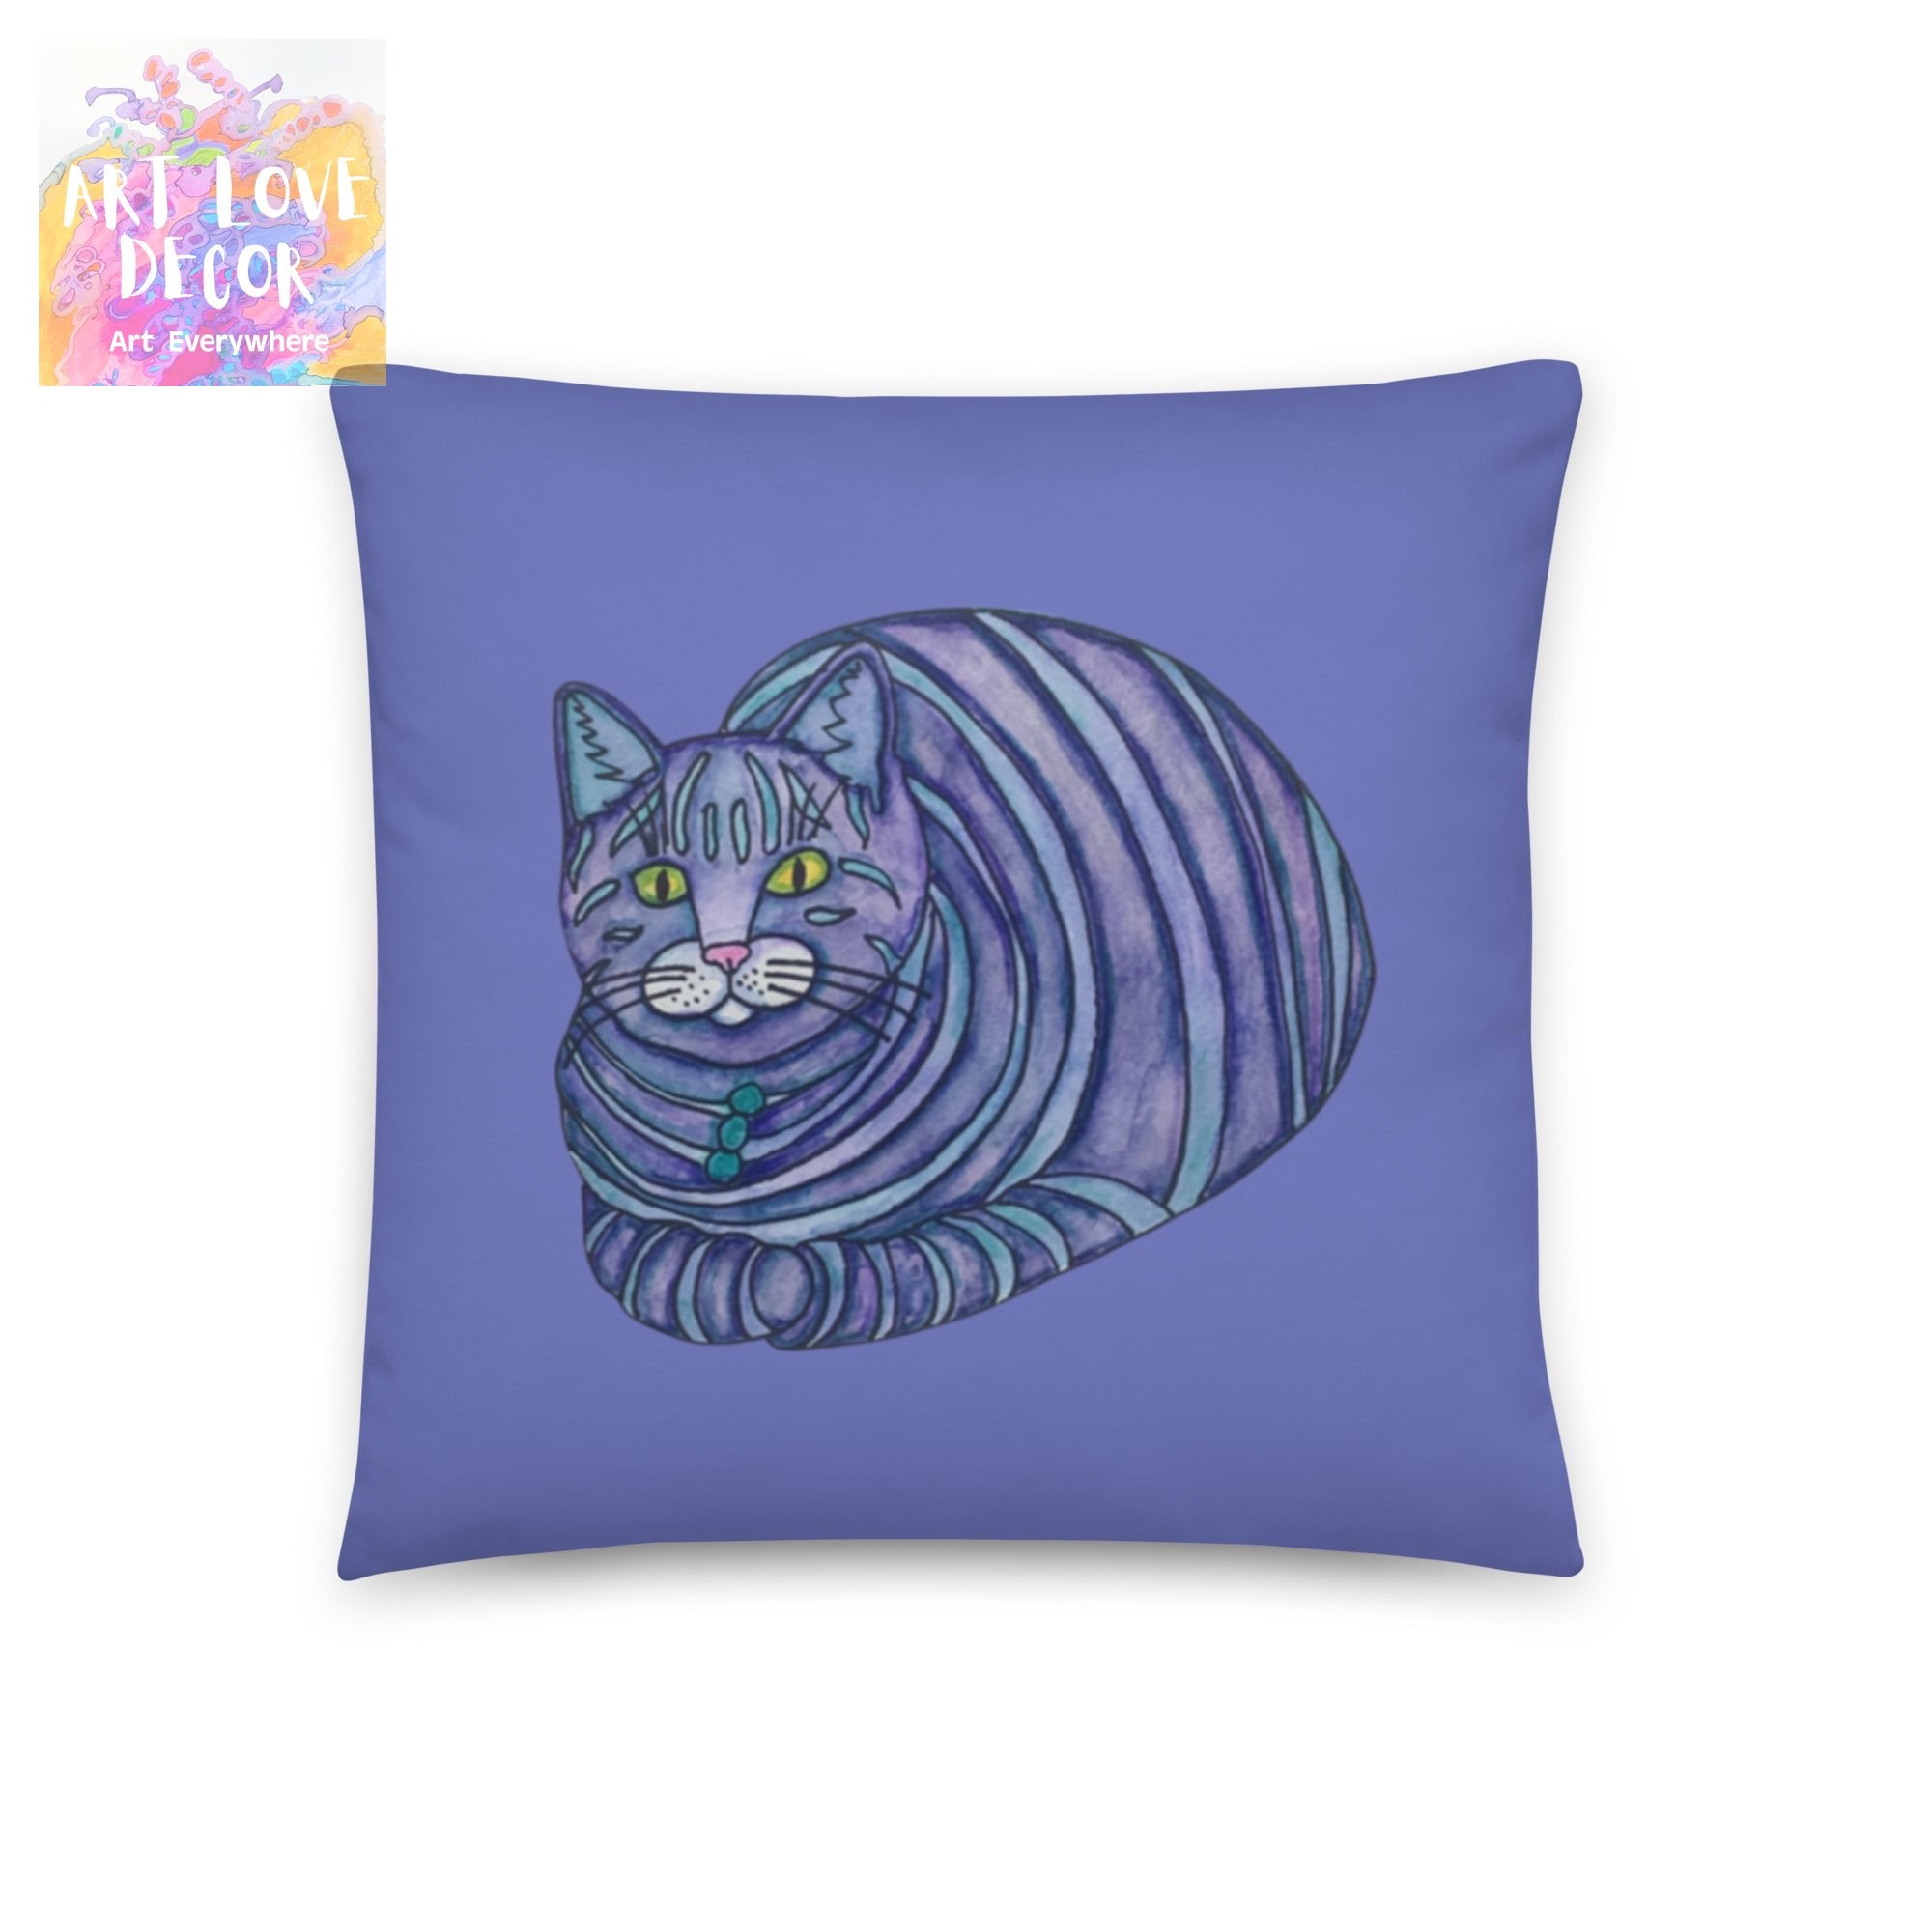 Big Blue Tabby Cat Pillow - Art Love Decor